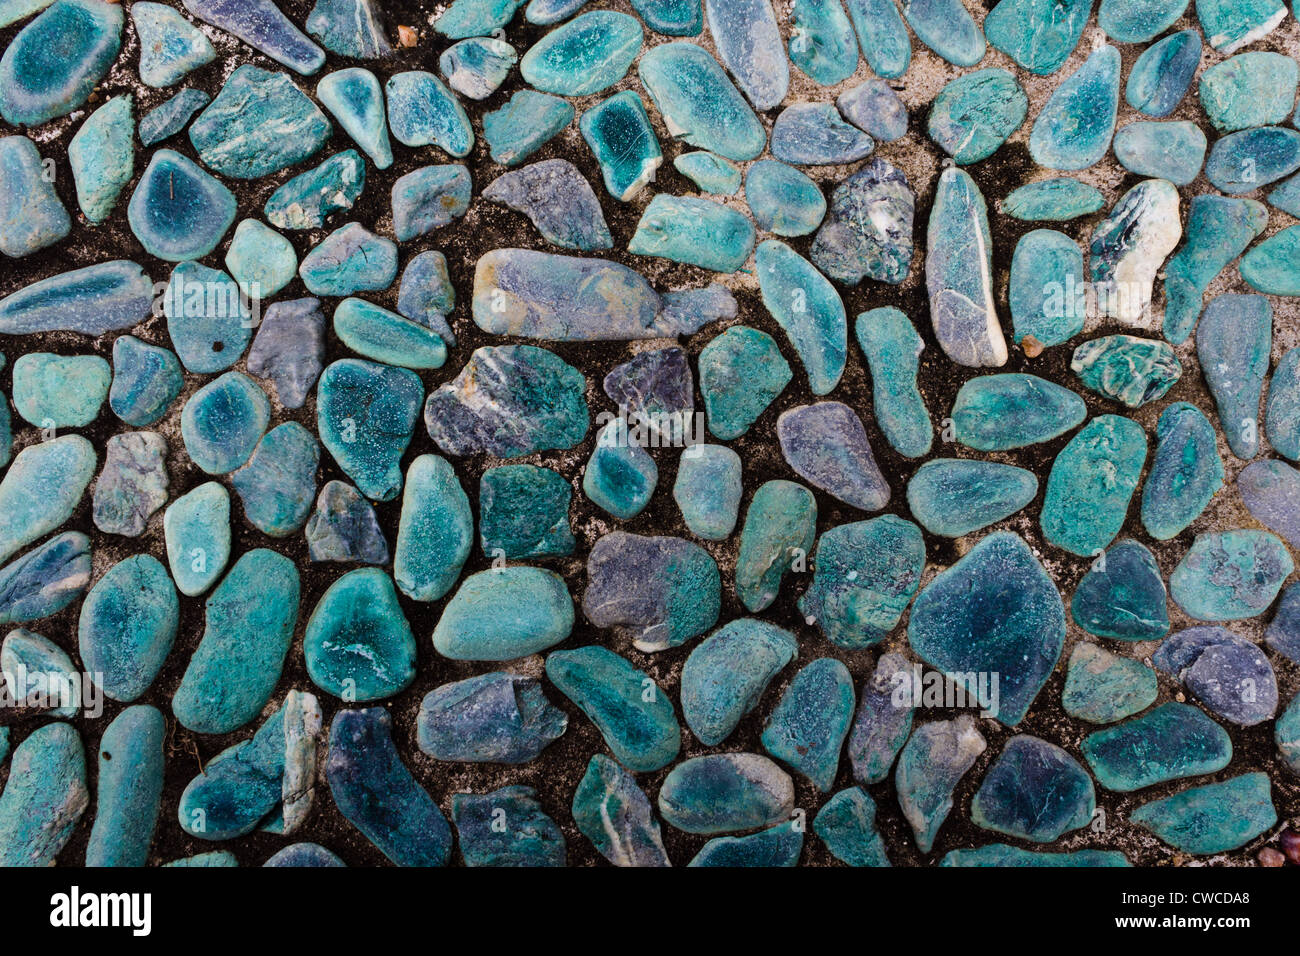 Aqua suelo de piedras pequeñas. Foto de stock